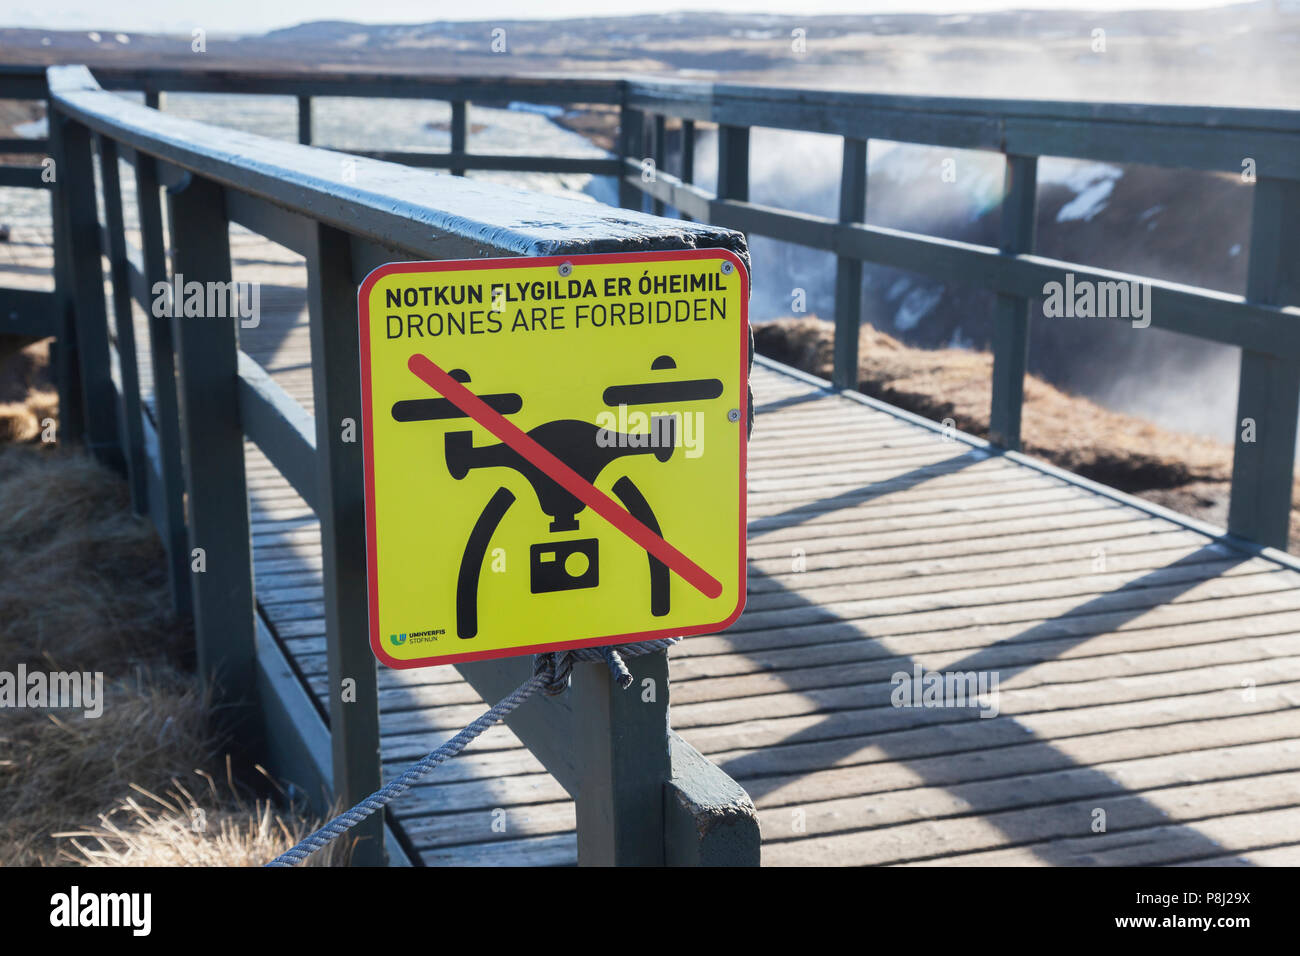 20. April 2018: Wasserfall Gullfoss, Island - Drohnen sind verboten. Stockfoto